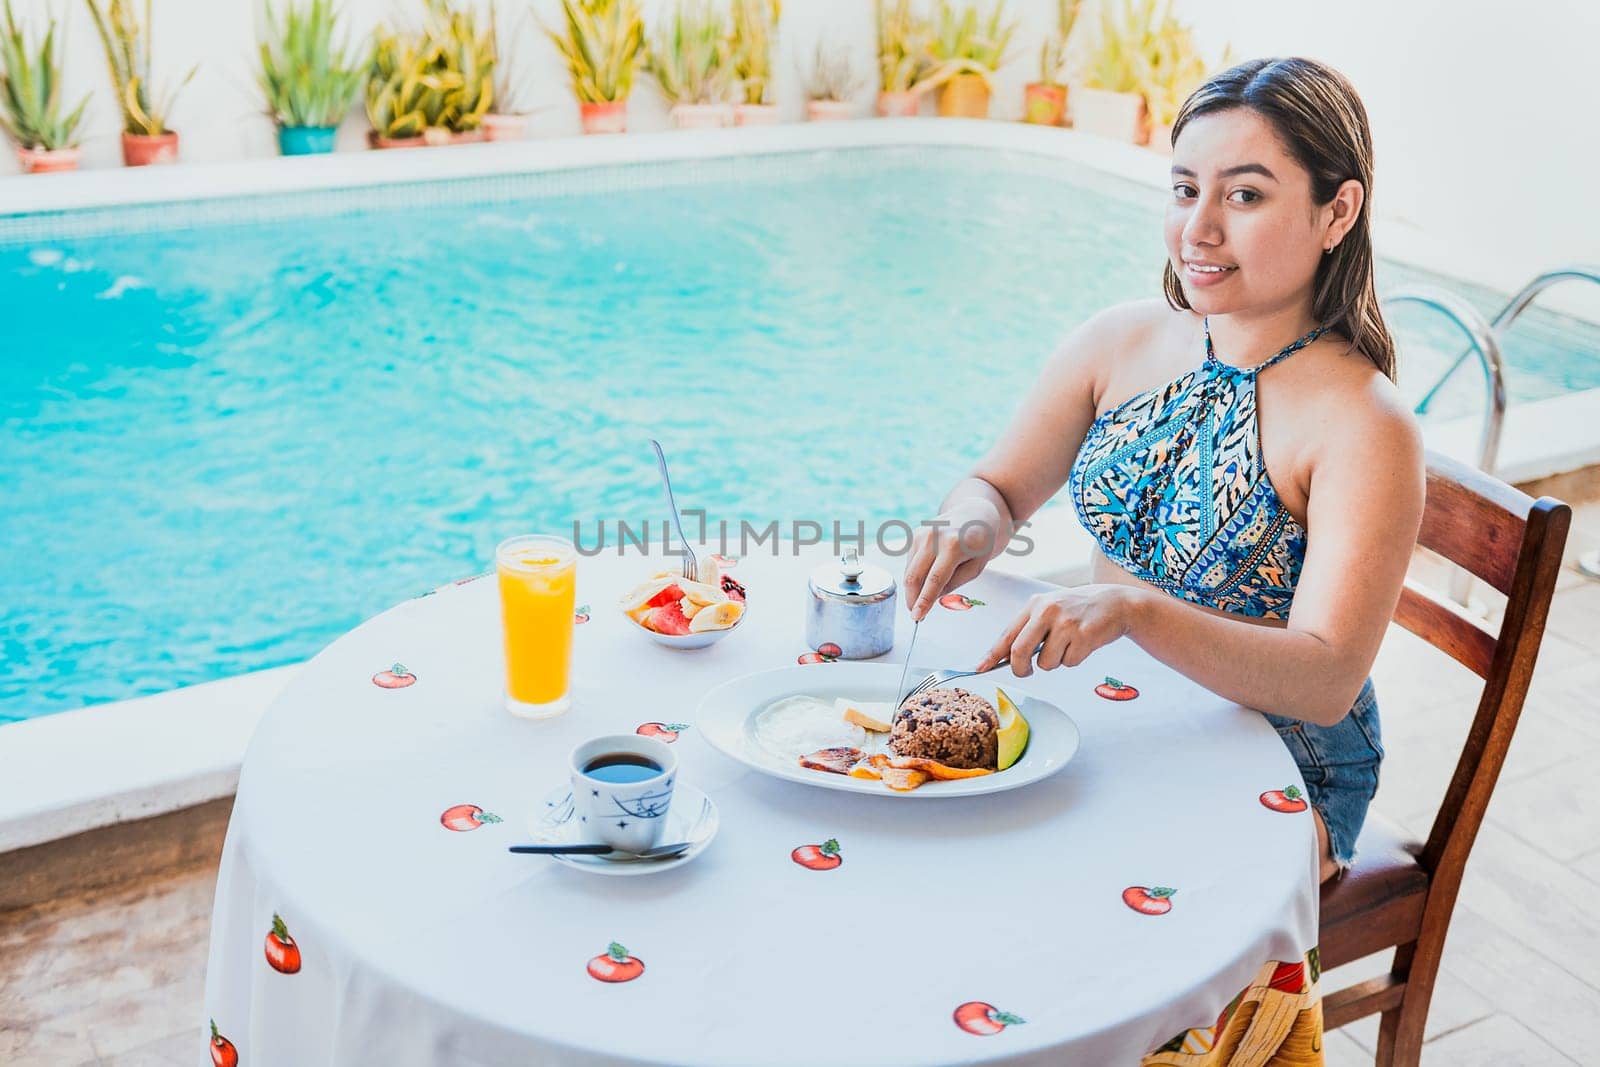 Smiling girl having breakfast near the swim pool. Woman on vacation having breakfast near swimming pool. Breakfast concept near swimming pool by isaiphoto